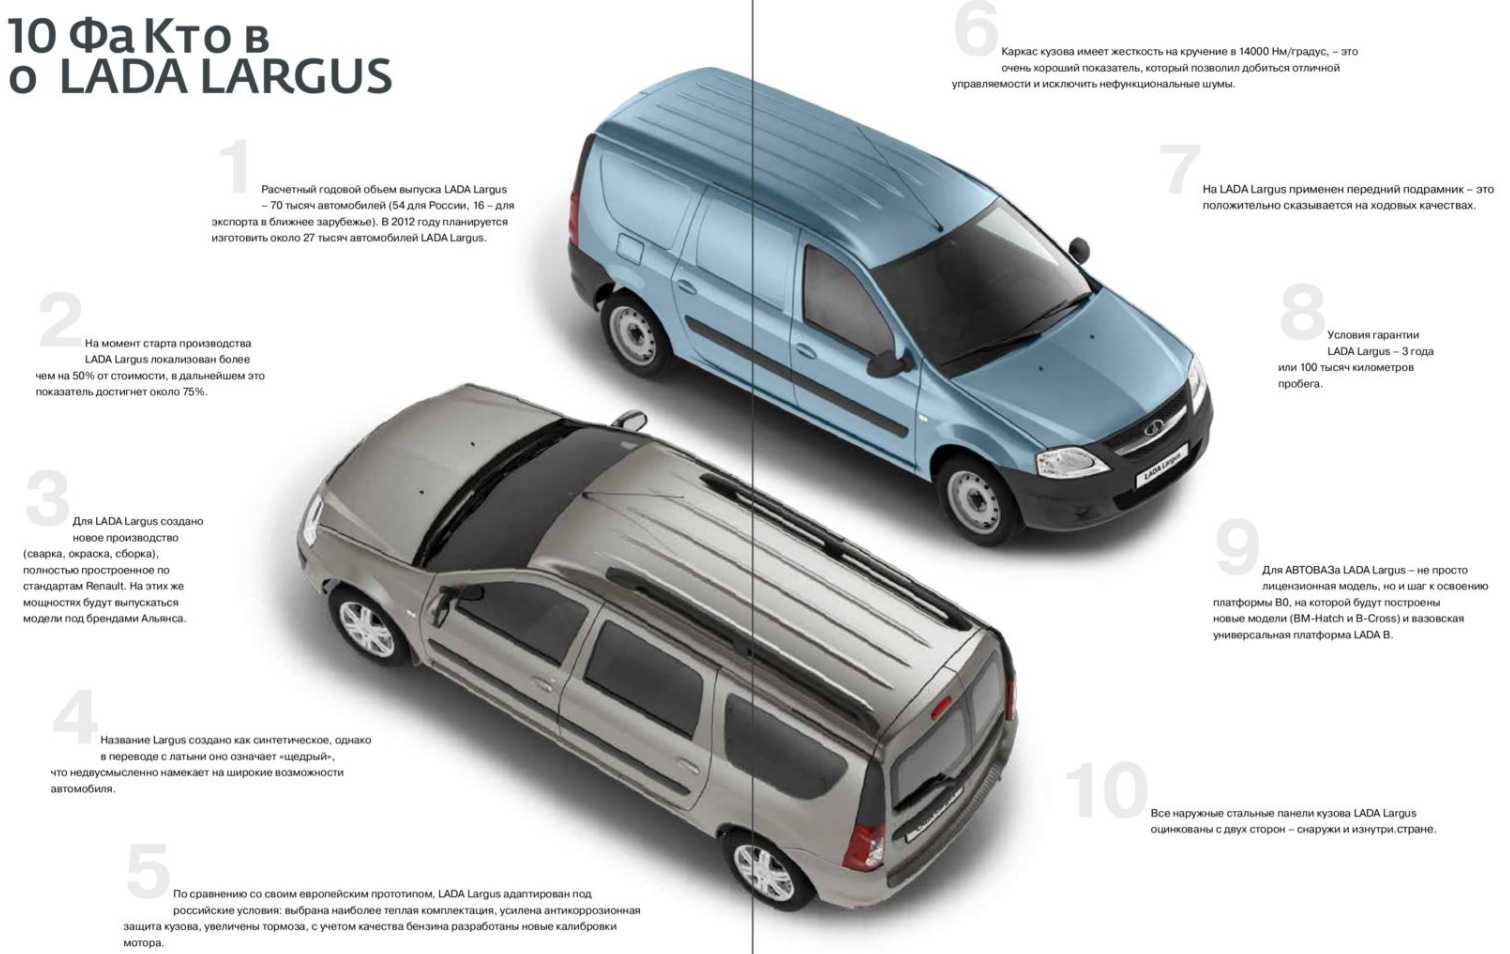 Описание Автомобиль Лада Ларгус это большой скачек вперед в технологичном плане, при сравнении с предыдущими моделями компании Функциональность бортового